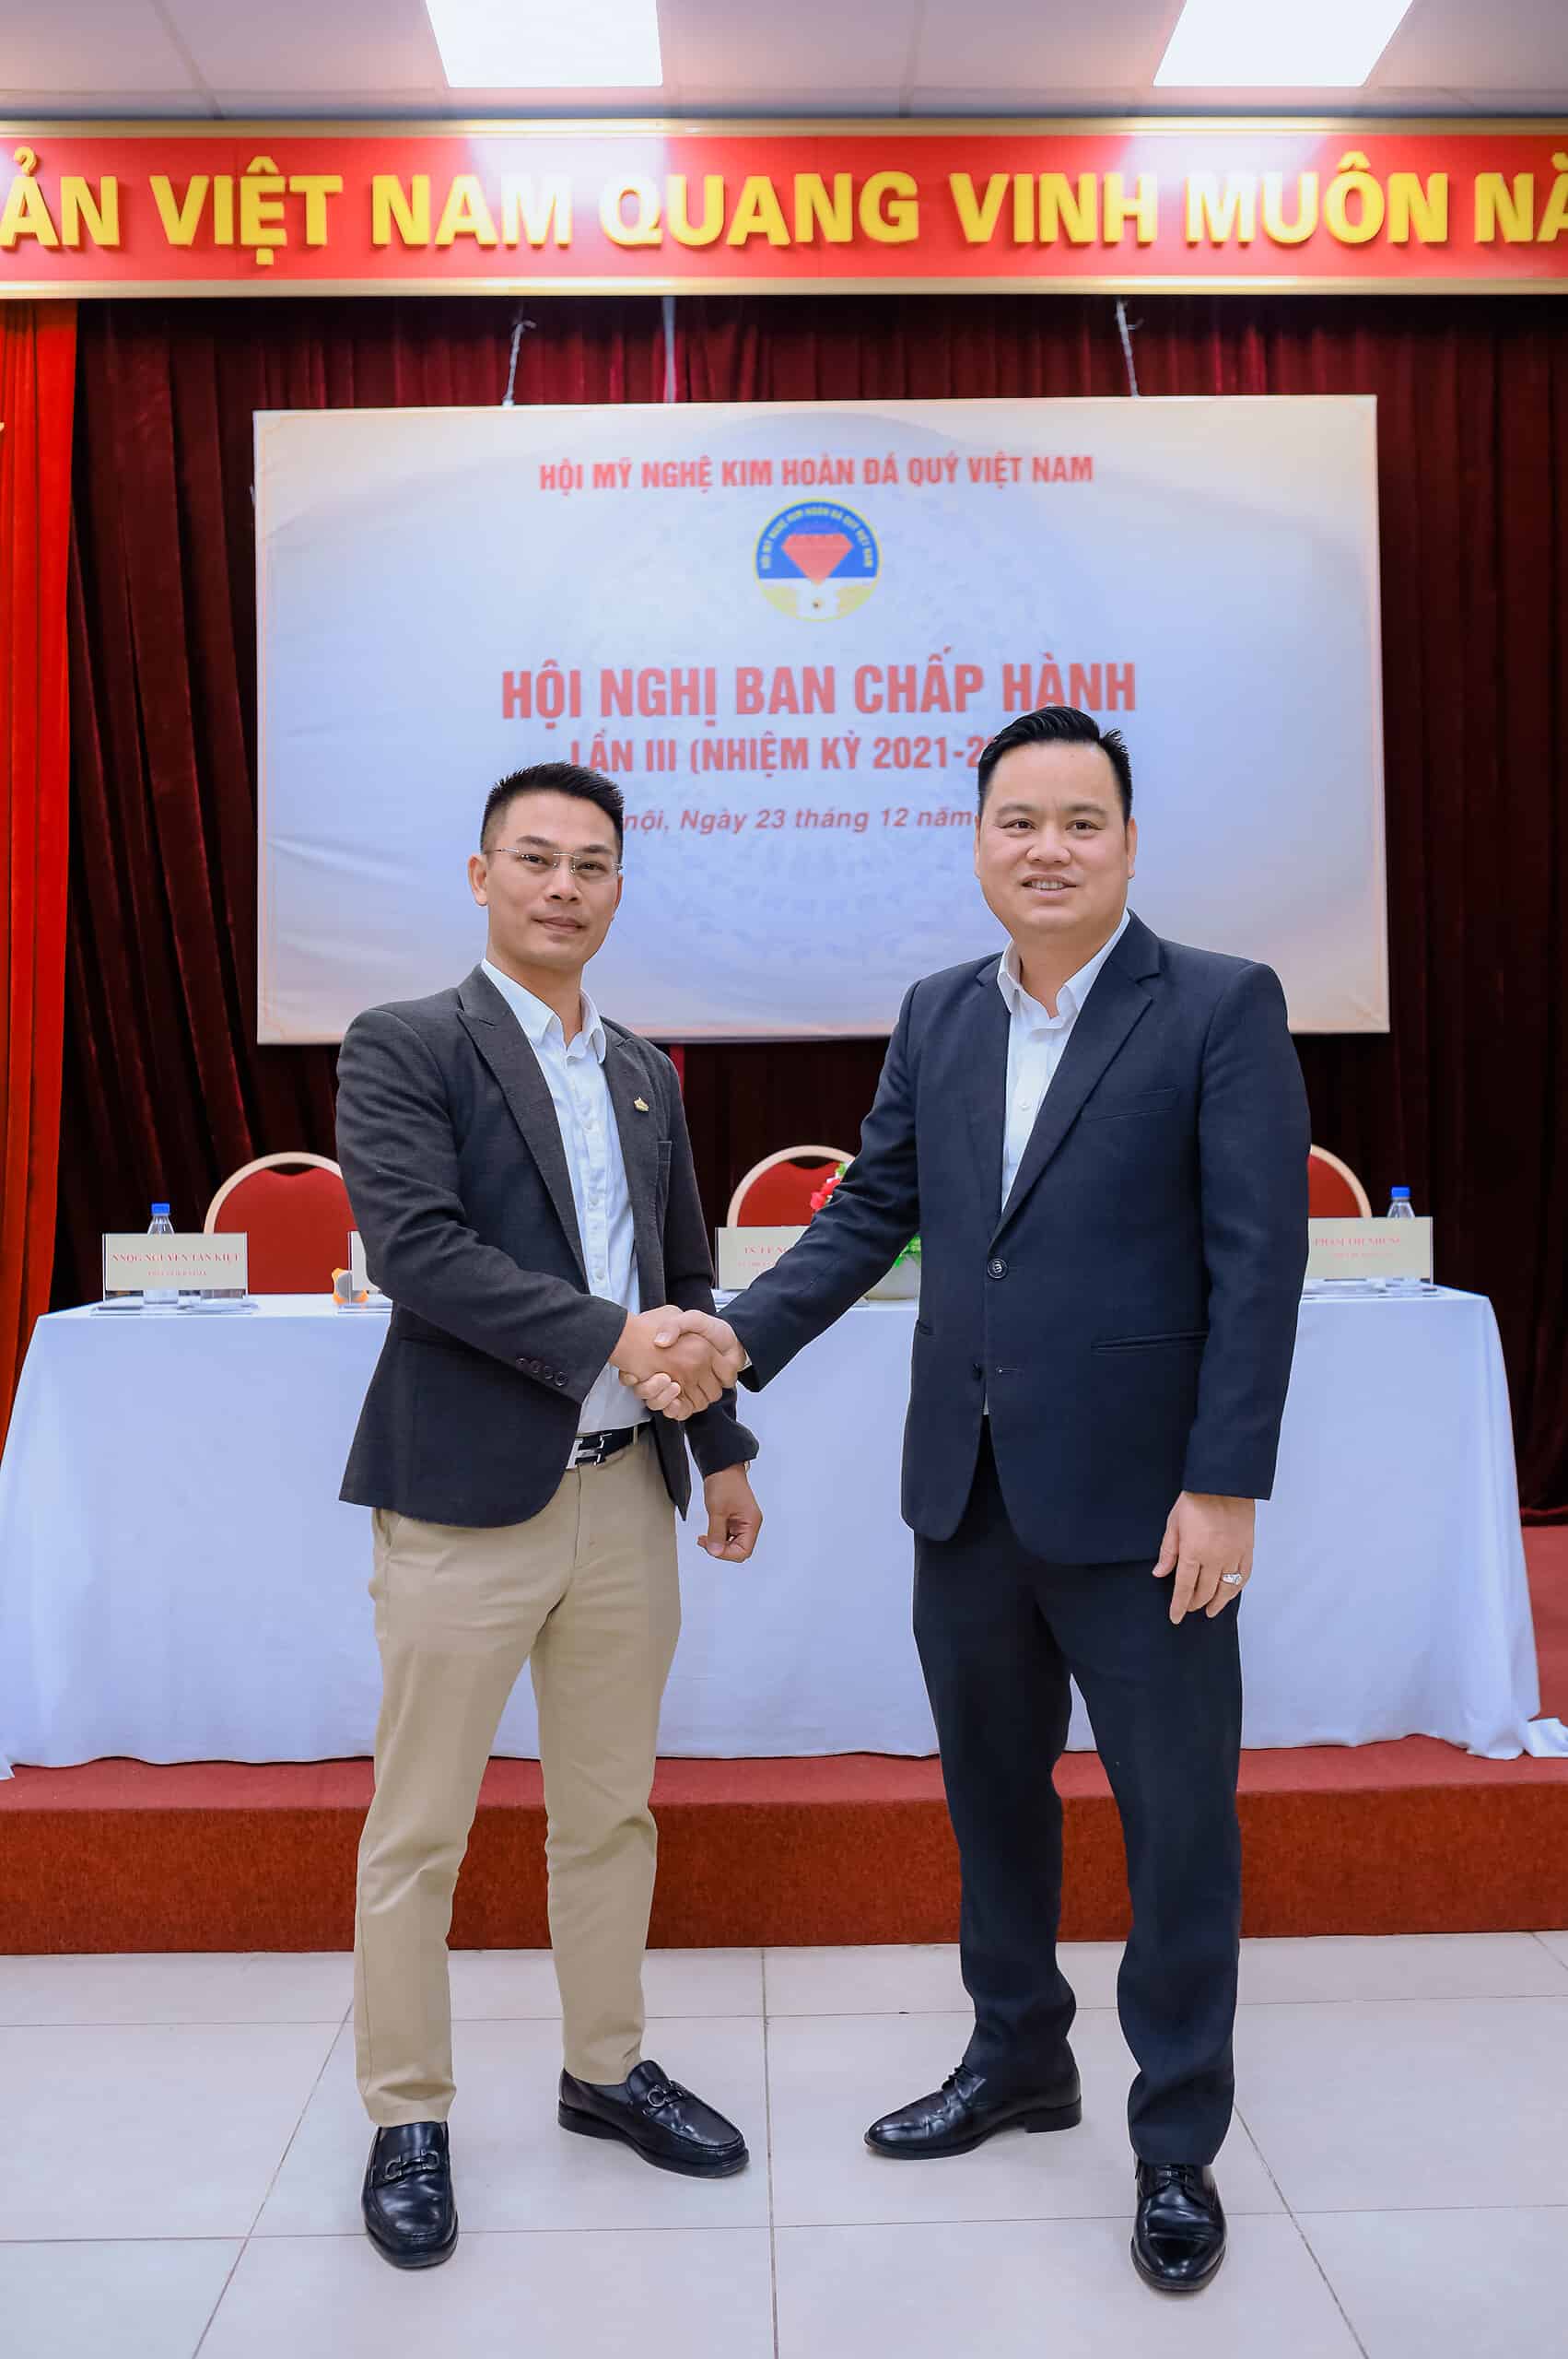 Chụp ảnh cùng ban lãnh đạo Viện Mỹ Nghệ Kim Hoàn Đá Quý Việt Nam 